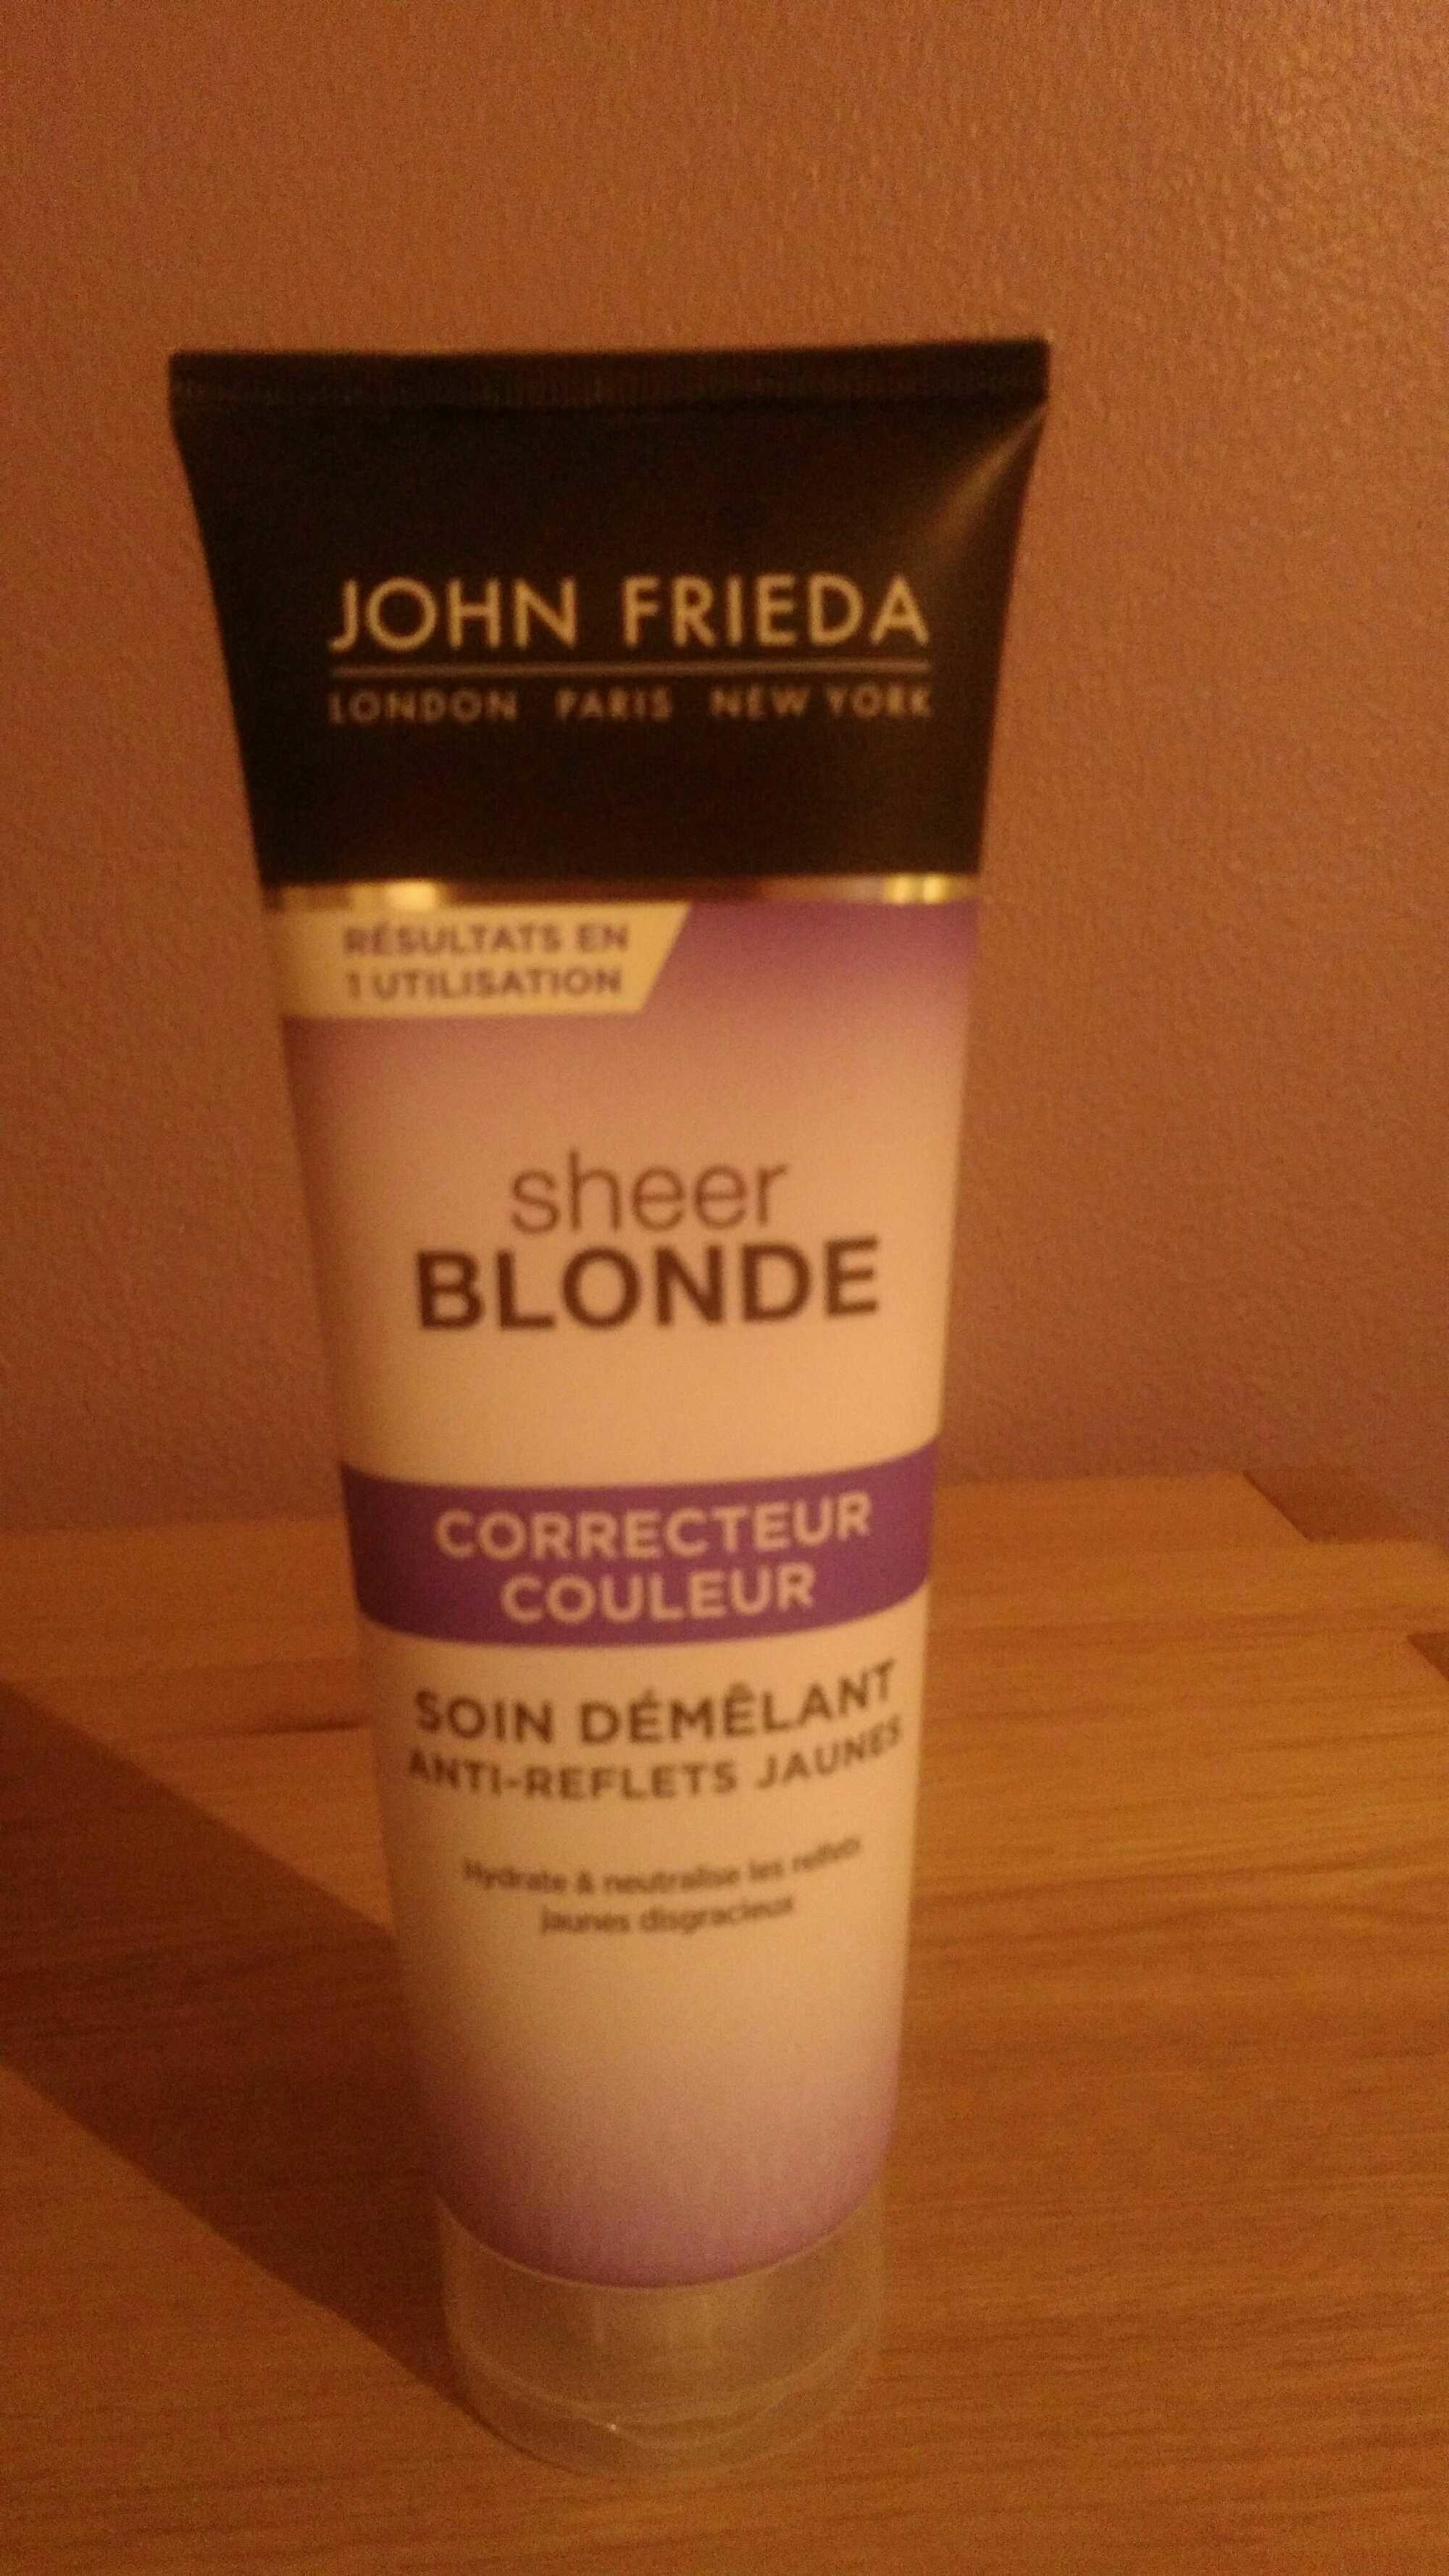 Sheer blonde correcteur couleur - Product - fr